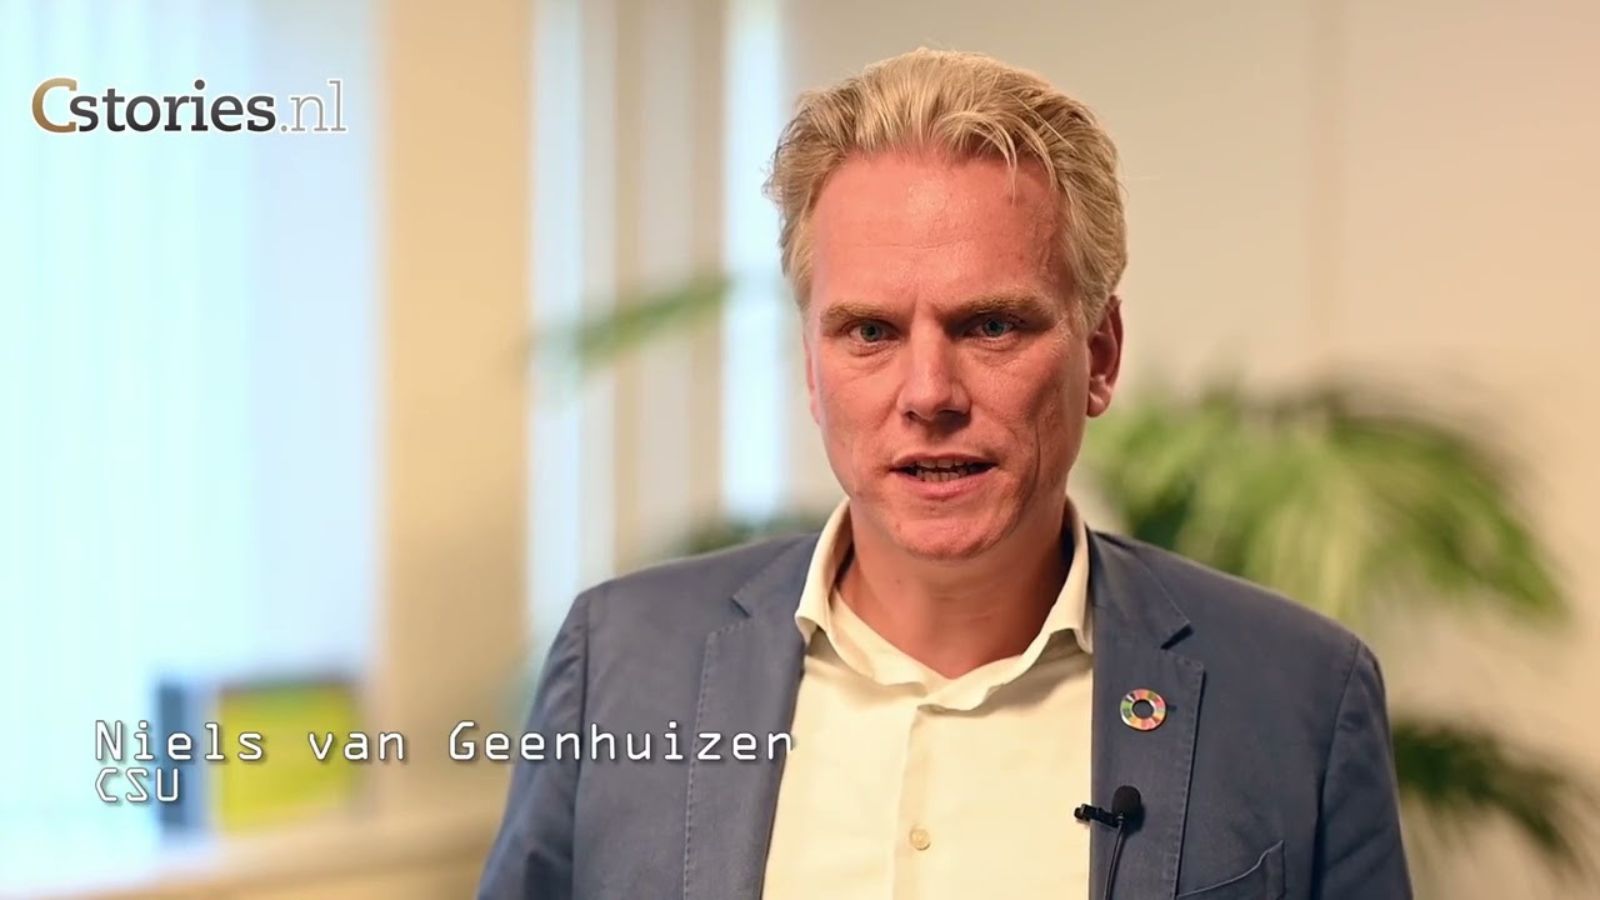 SD400 Niels van Geenhuizen, manager Duurzaamheid